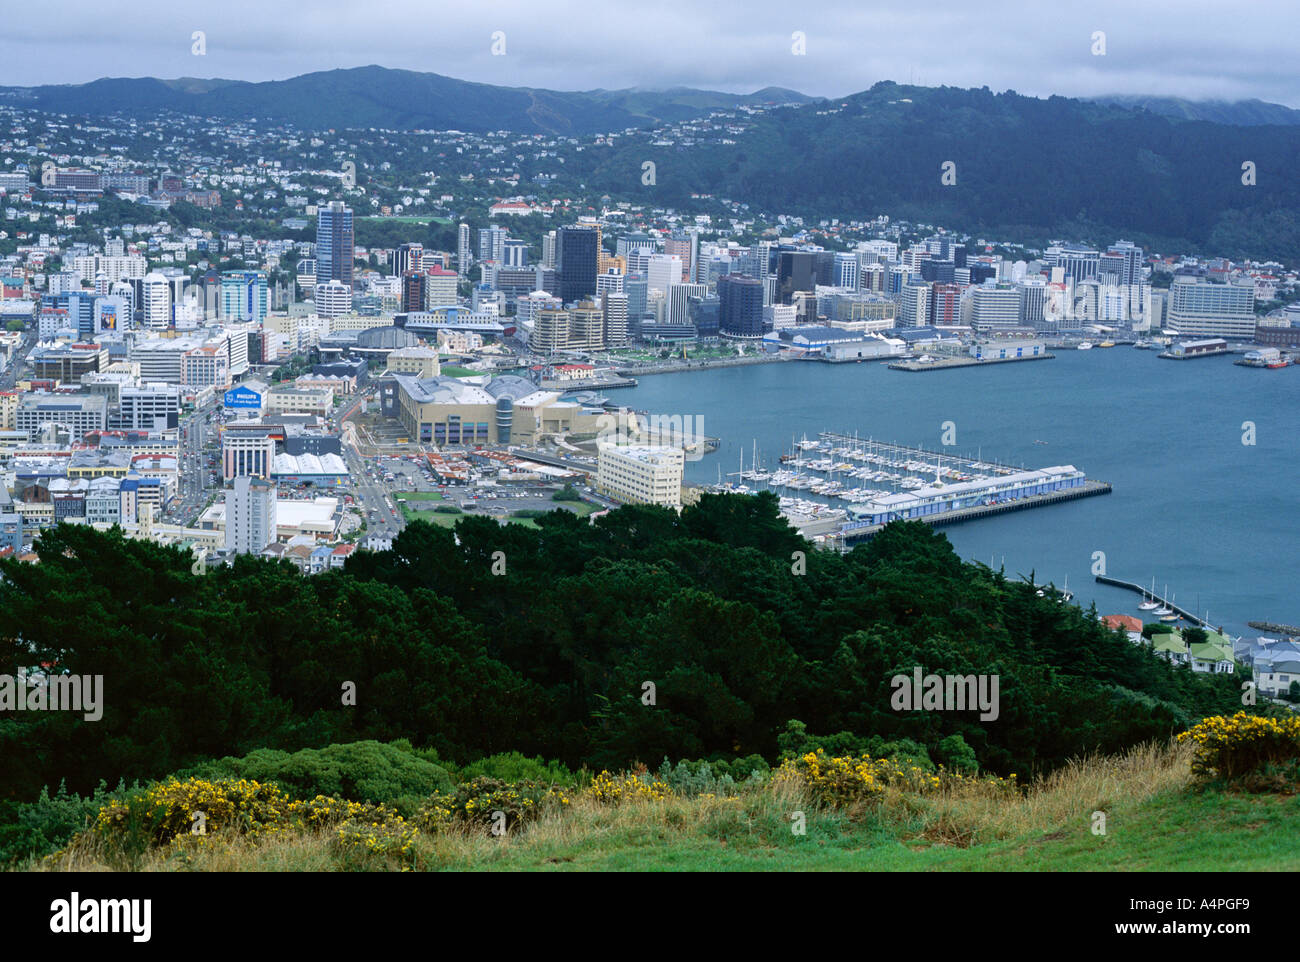 Nordwestlich suchen von Mount Victoria in Richtung Lambton Hafen und Stadtzentrum von Wellington Nordpazifik Insel Neuseeland Stockfoto